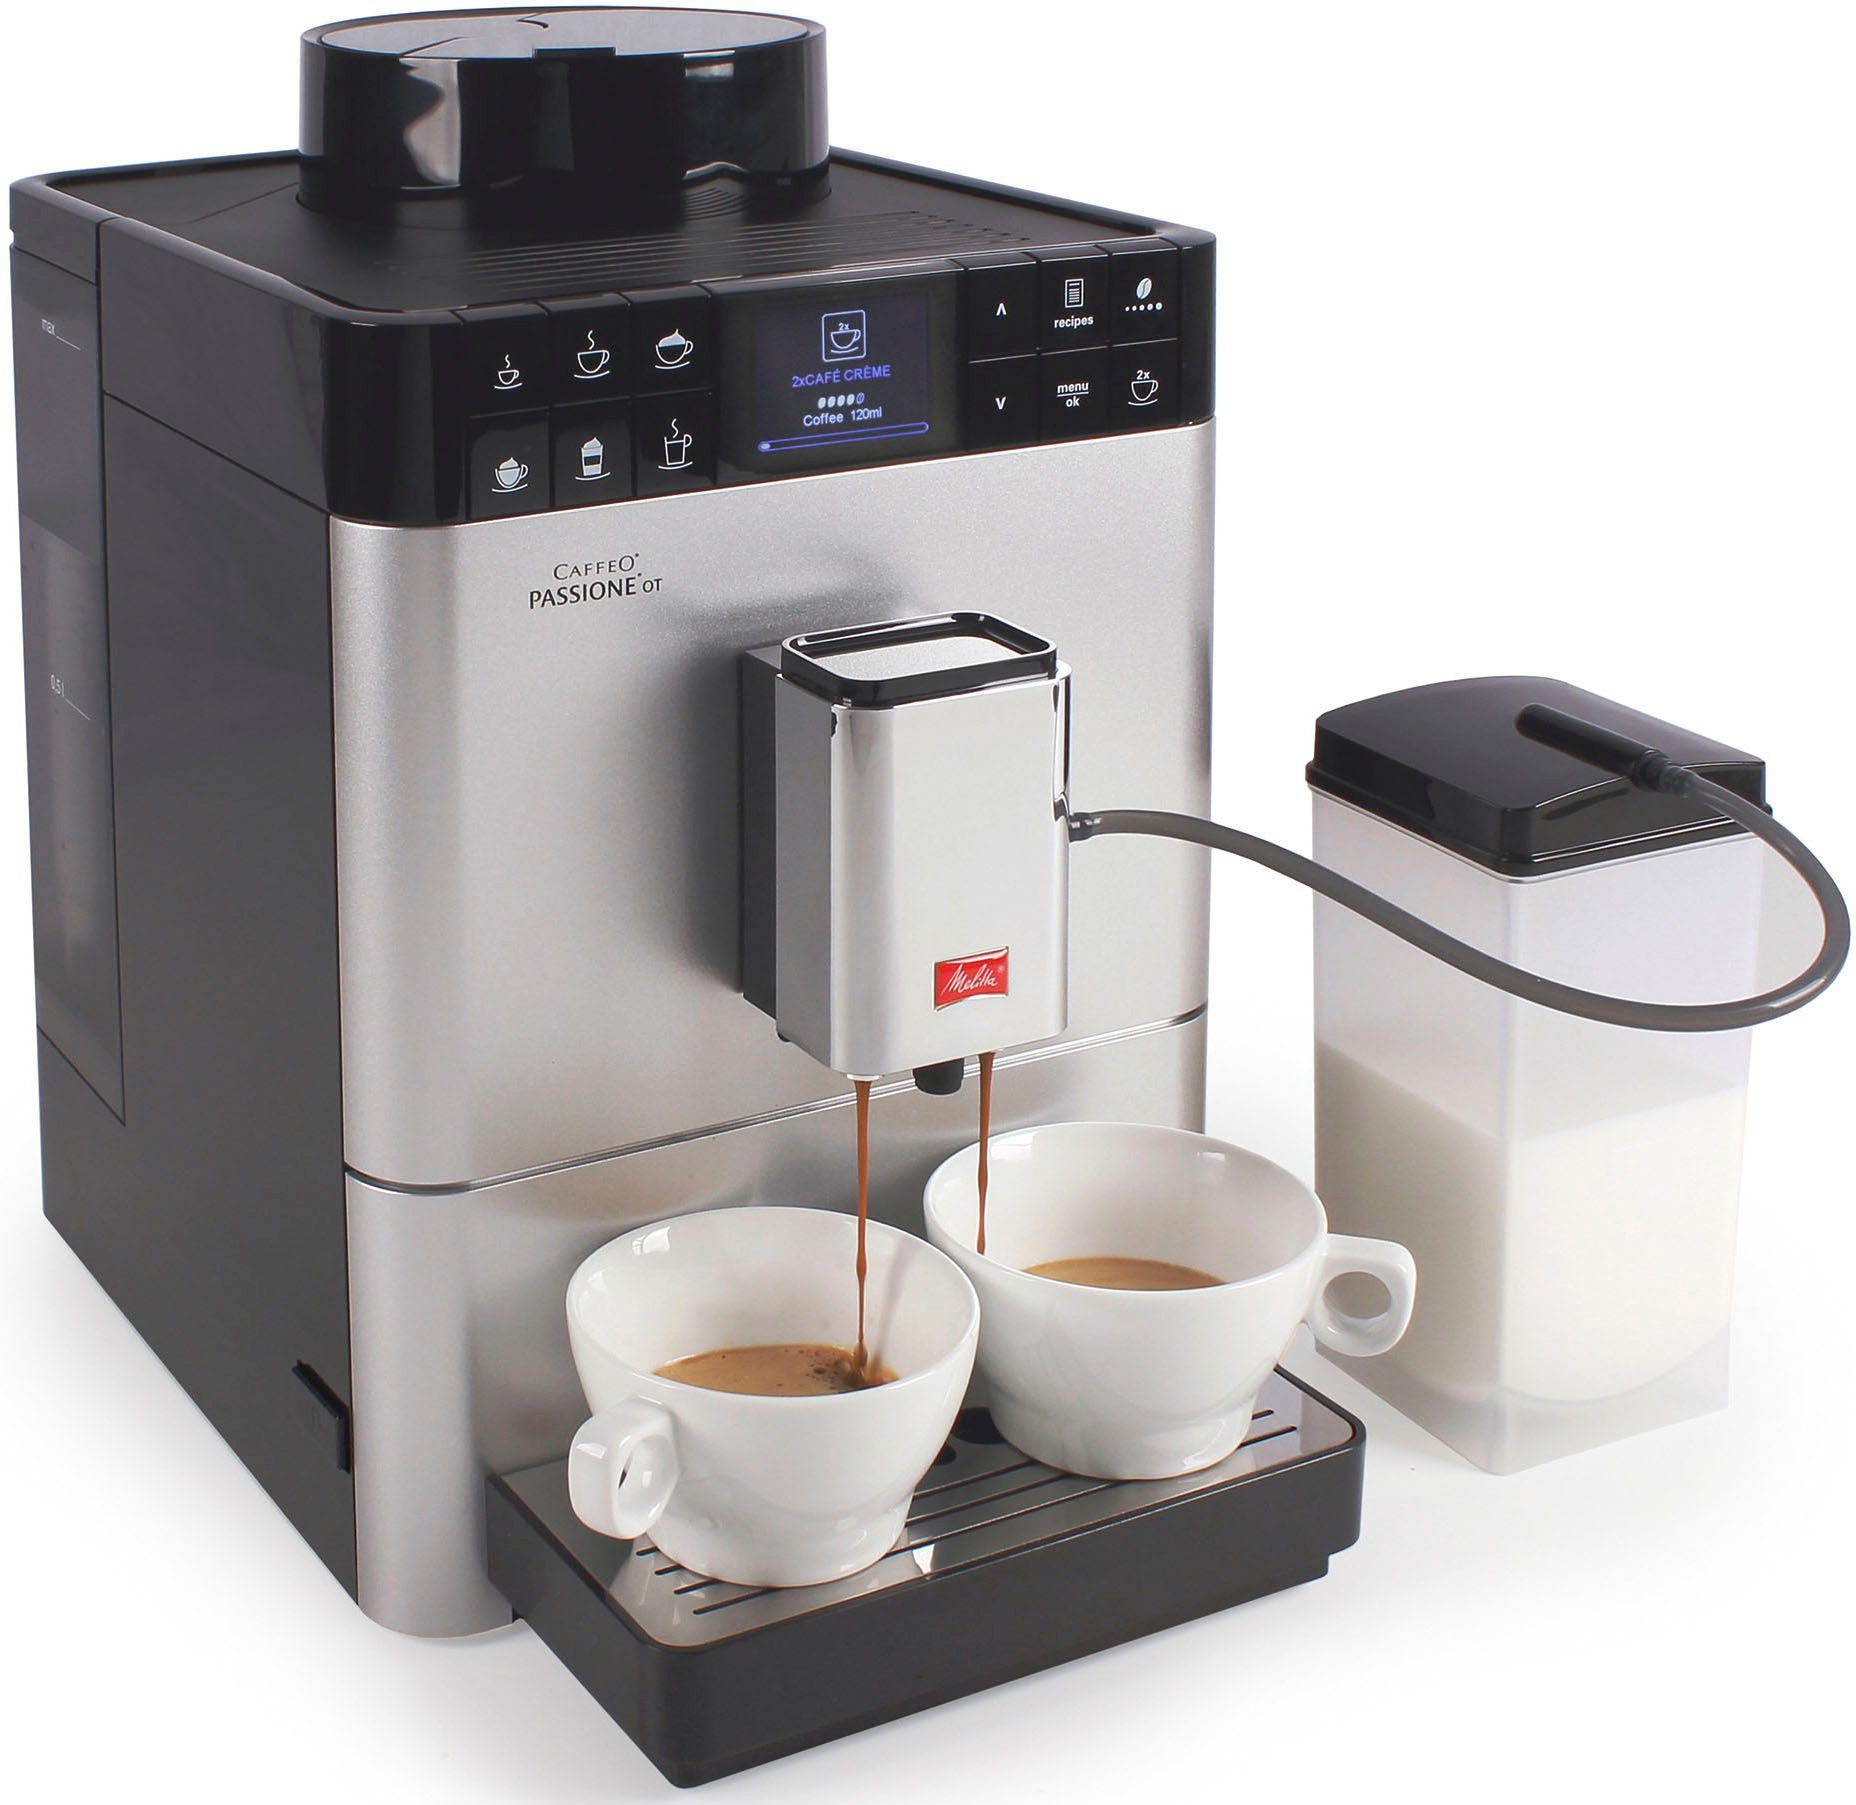 Sorgfältig ausgewählt Melitta Kaffeevollautomat gemahlene Touch Bohnen frisch Touch One Passione® F53/1-101, Funktion, tassengenau silber, One